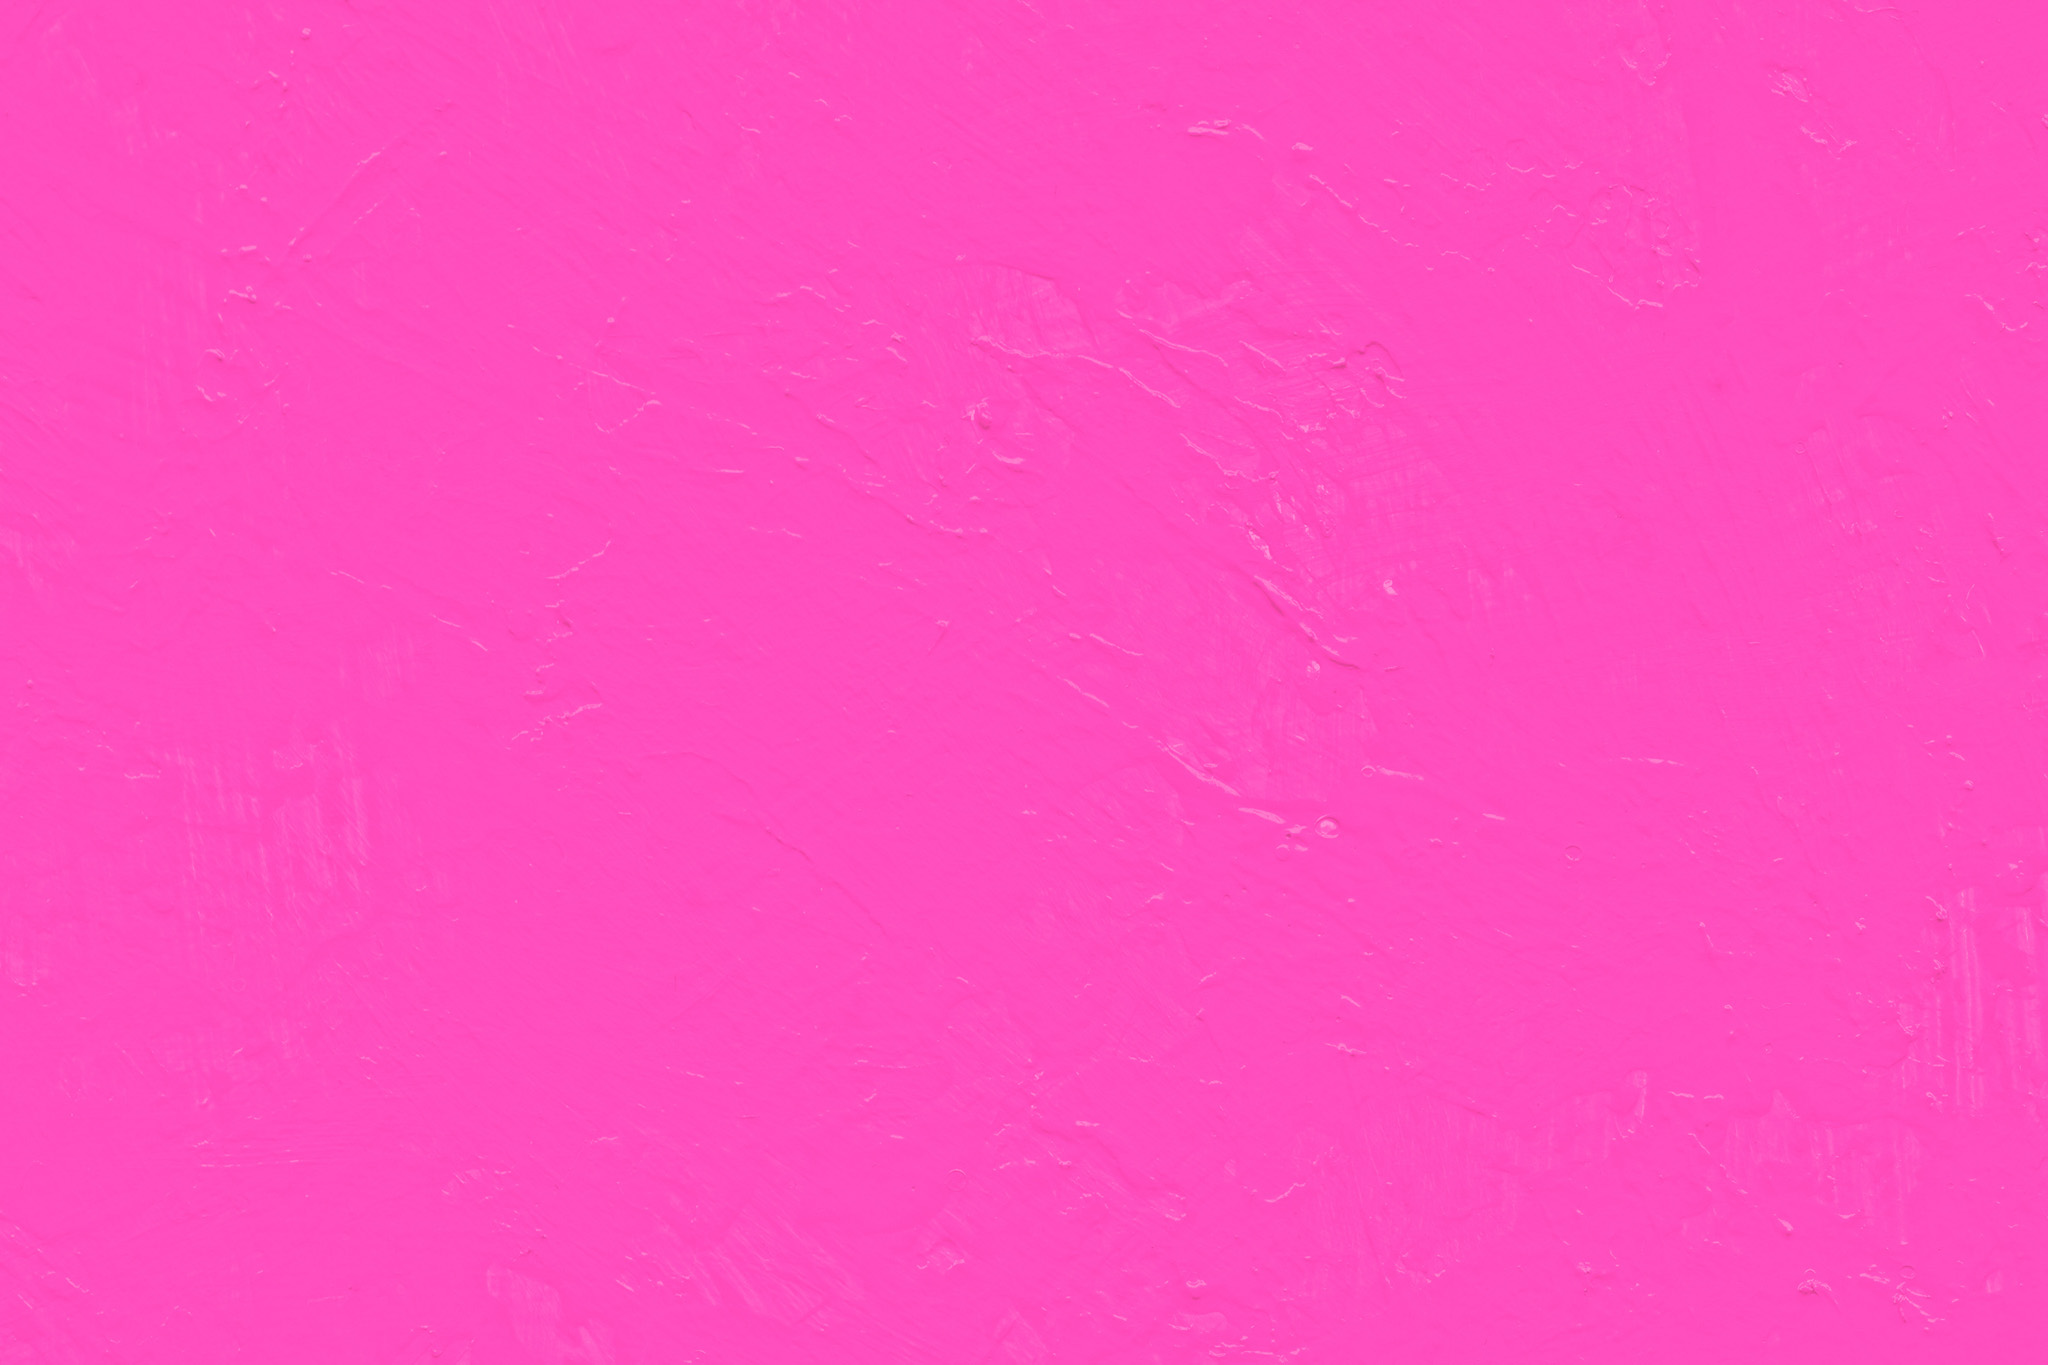 シンプルなピンク色の無地の背景 の画像素材を無料ダウンロード 1 背景フリー素材 Beiz Images